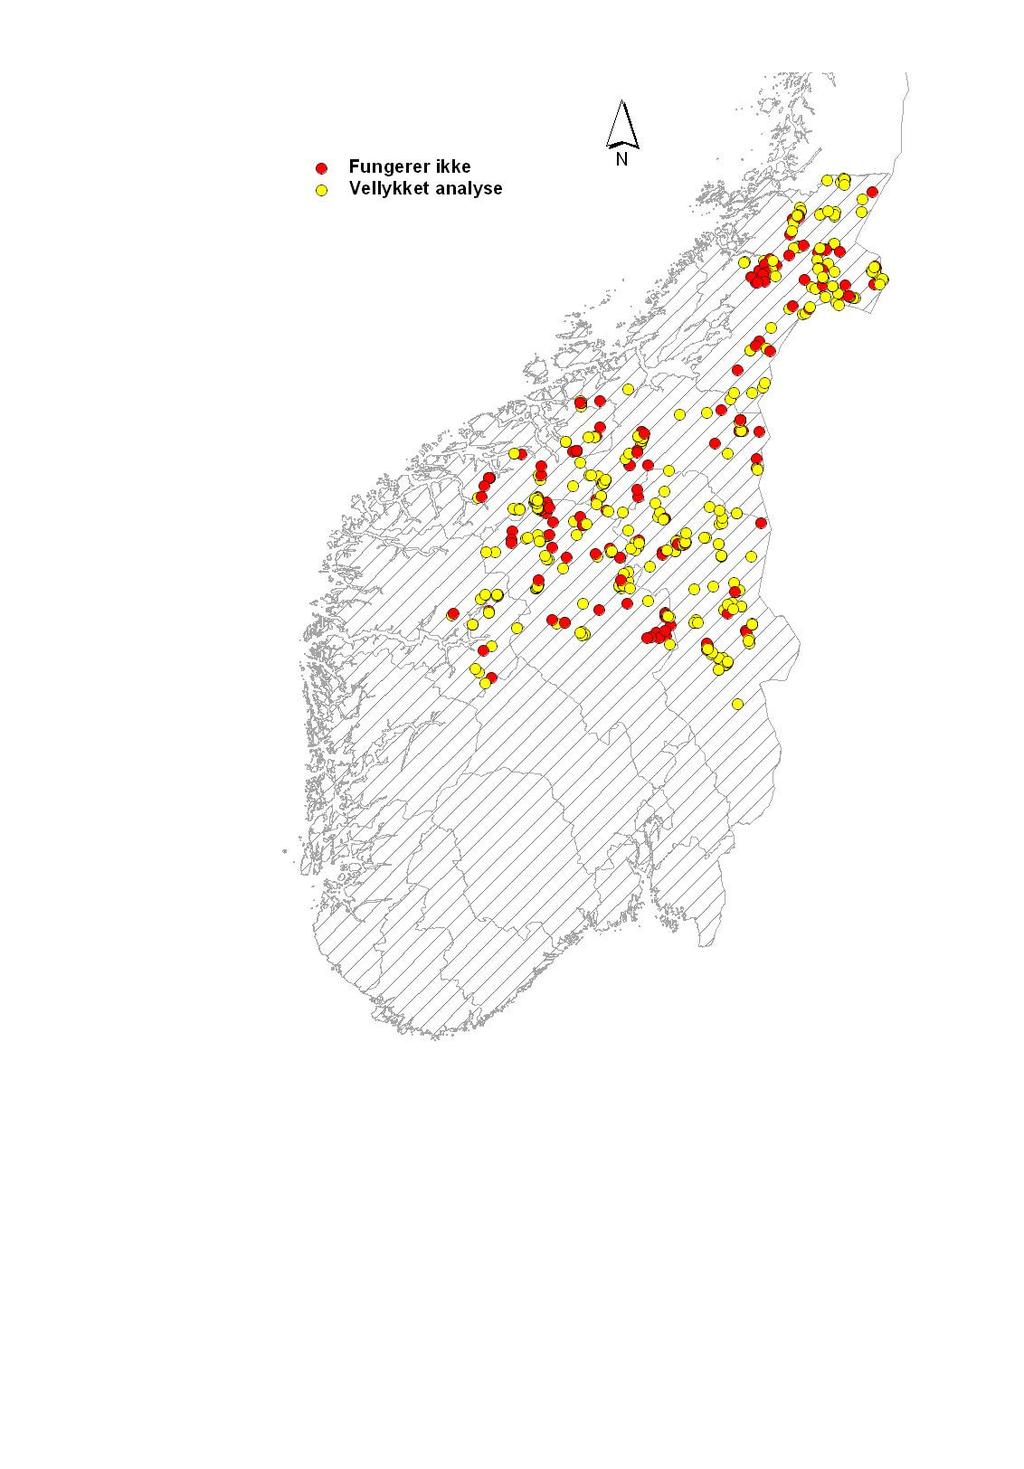 3 Resultater og diskusjon 3.1 Det norske materialet 3.1.1 Suksessrate og genotypingskvalitet Vellykket genetisk analyse ble gjennomført på 344 av de totalt 522 prøvene samlet inn i Sørog Midt-Norge i 2006 (Figur 3).